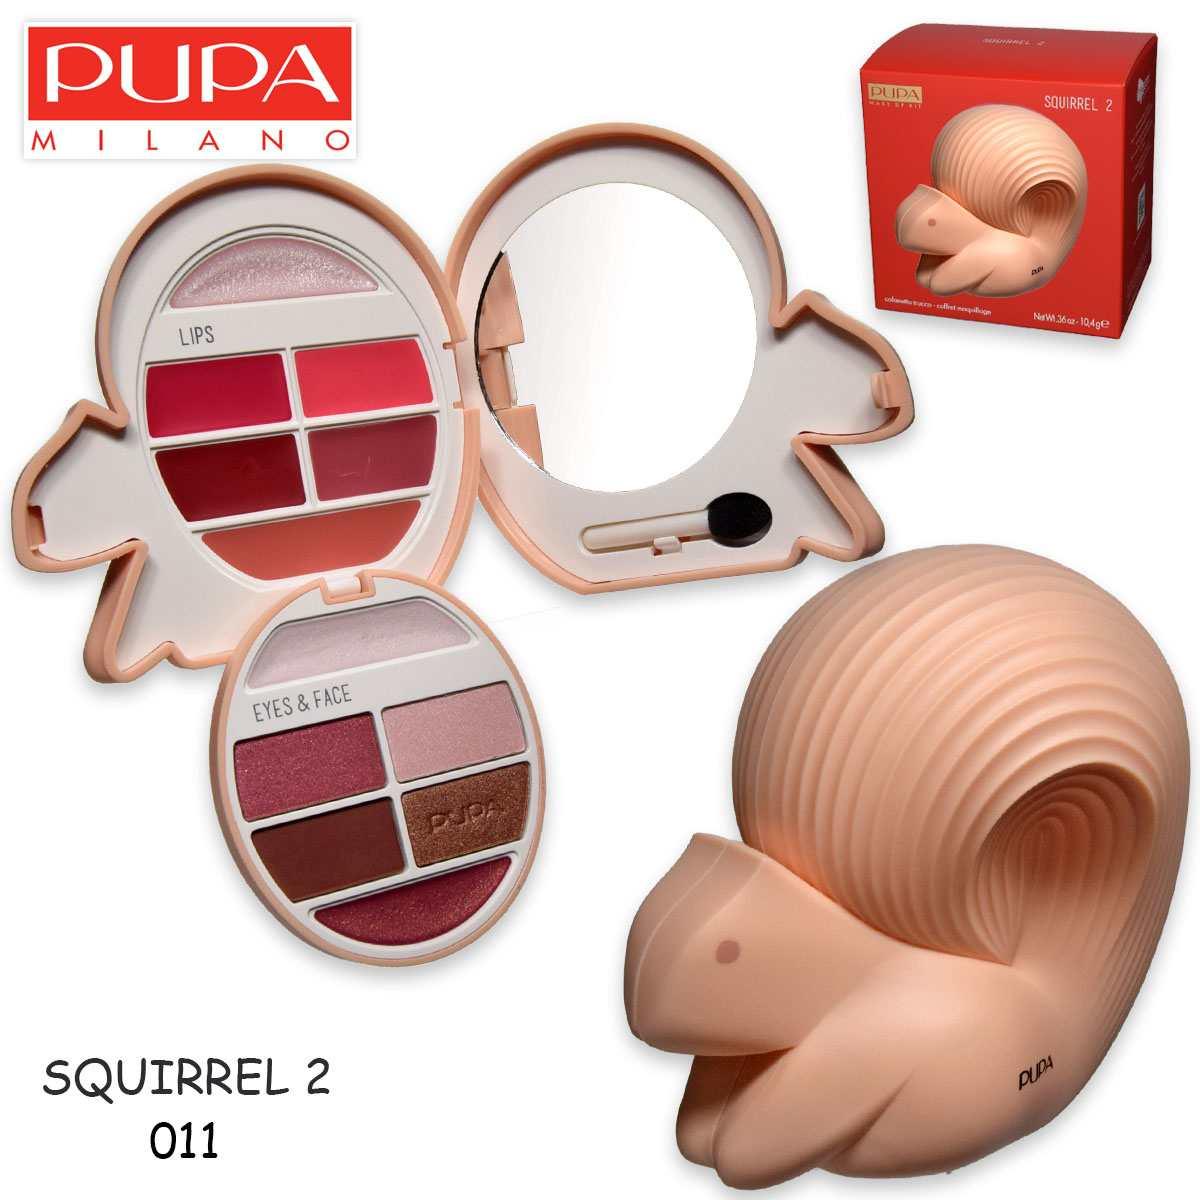 Pupa Squirrel 2 Make Up Set 010264A011 грим палитра за очи и устни 10.4g